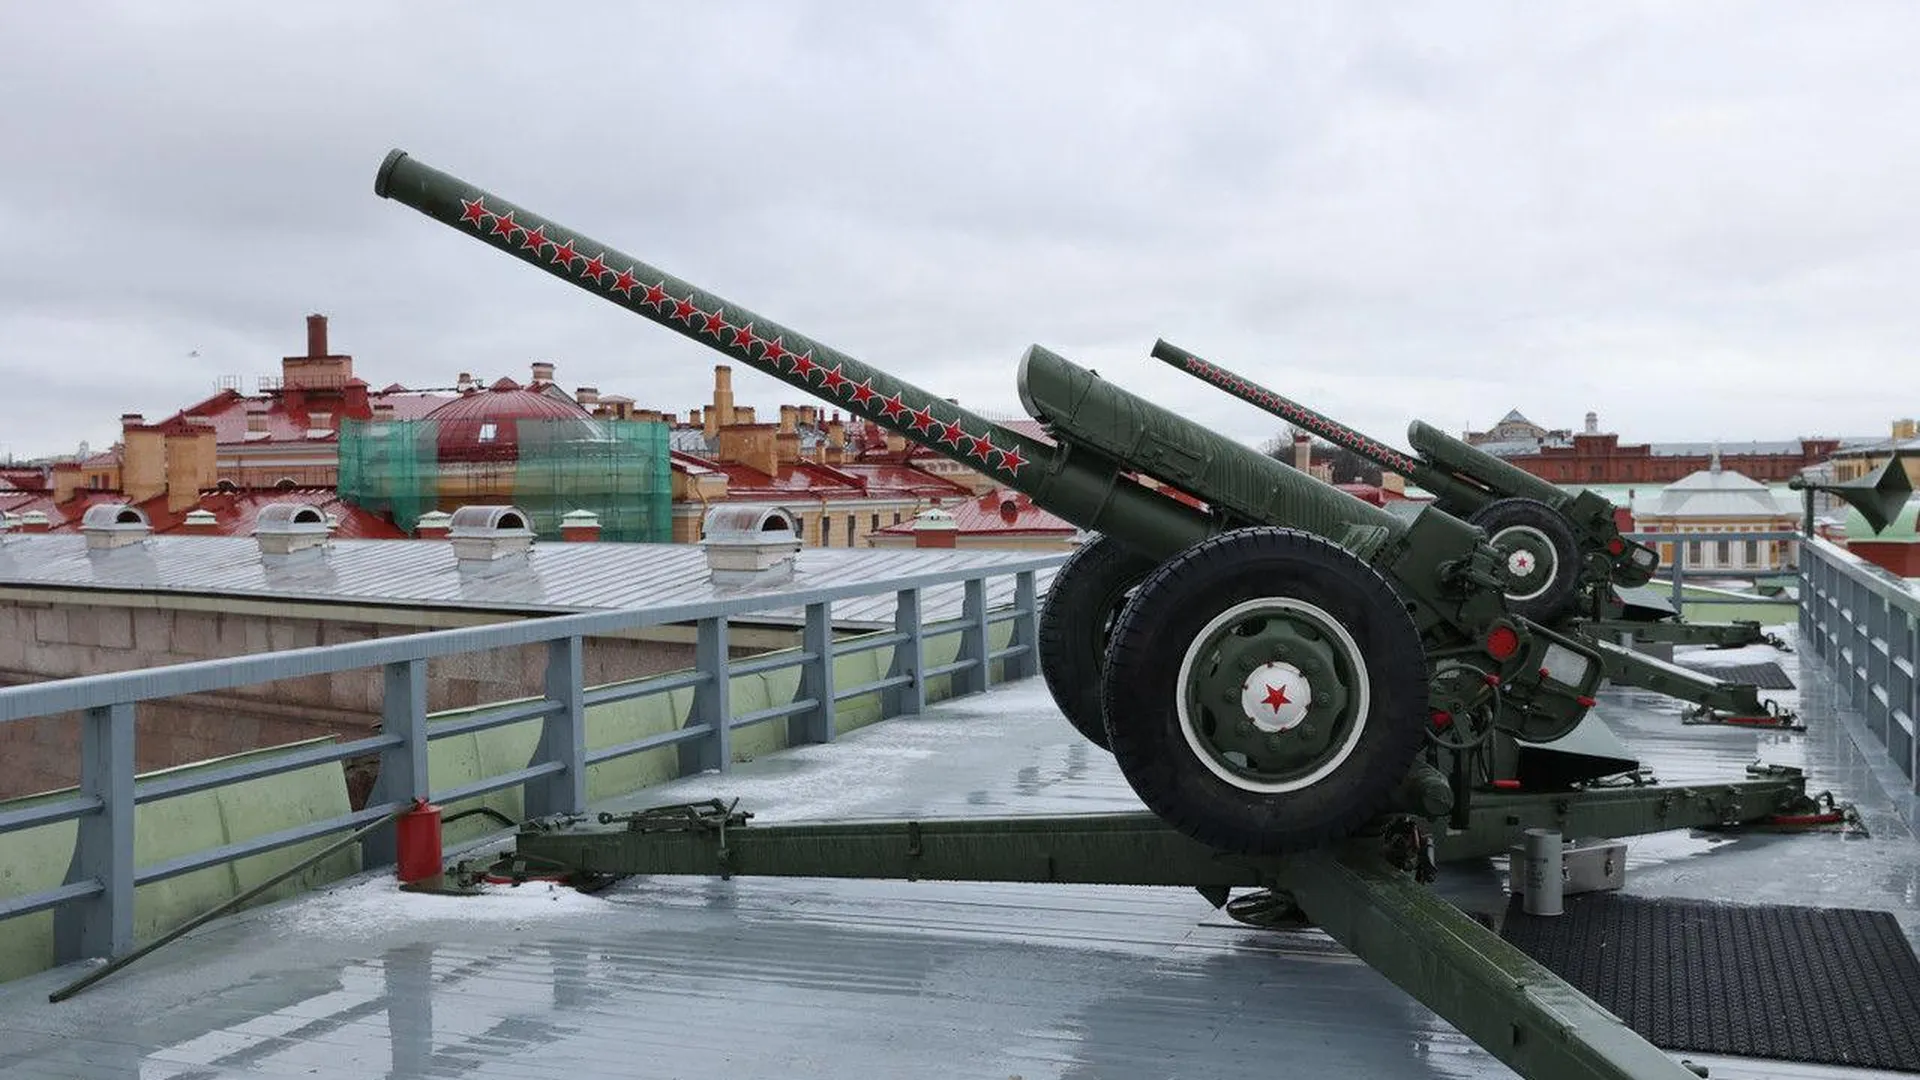 Пушки Нарышкина бастиона Петропавловской крепости перенесут в Петербурге